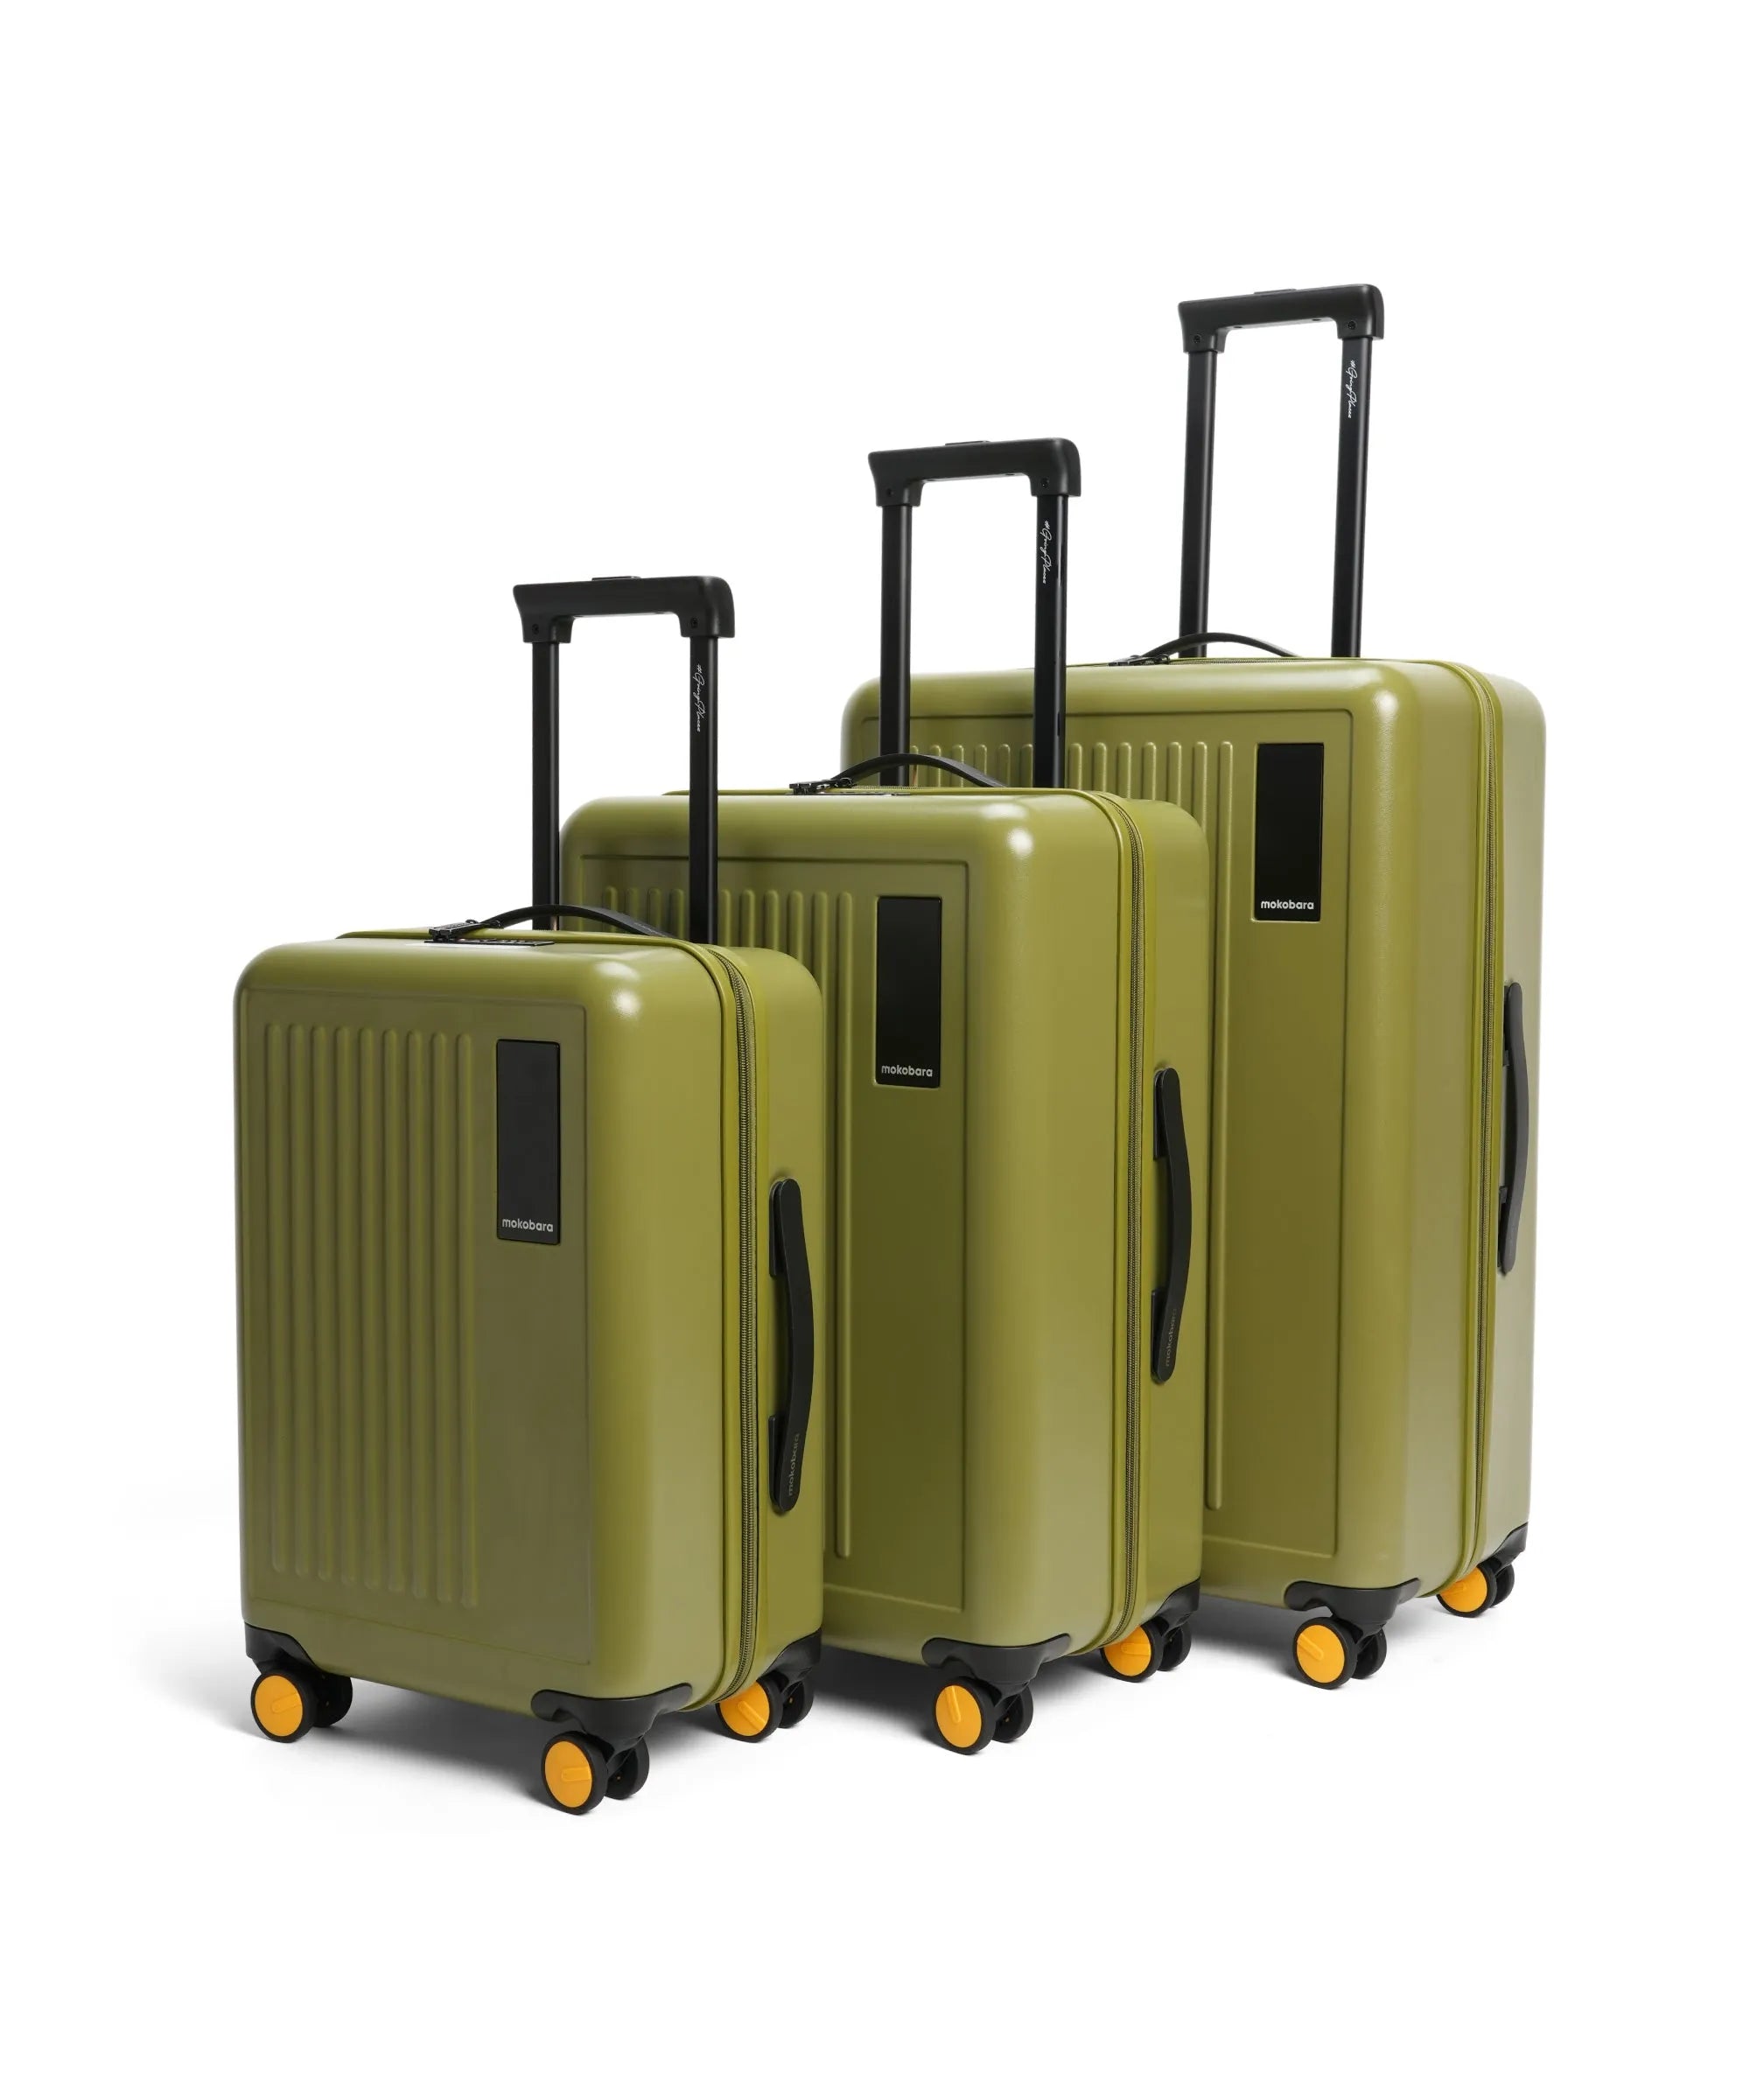 Buy Trolley Luggage & Suitcases Bags Online in India - Mokobara